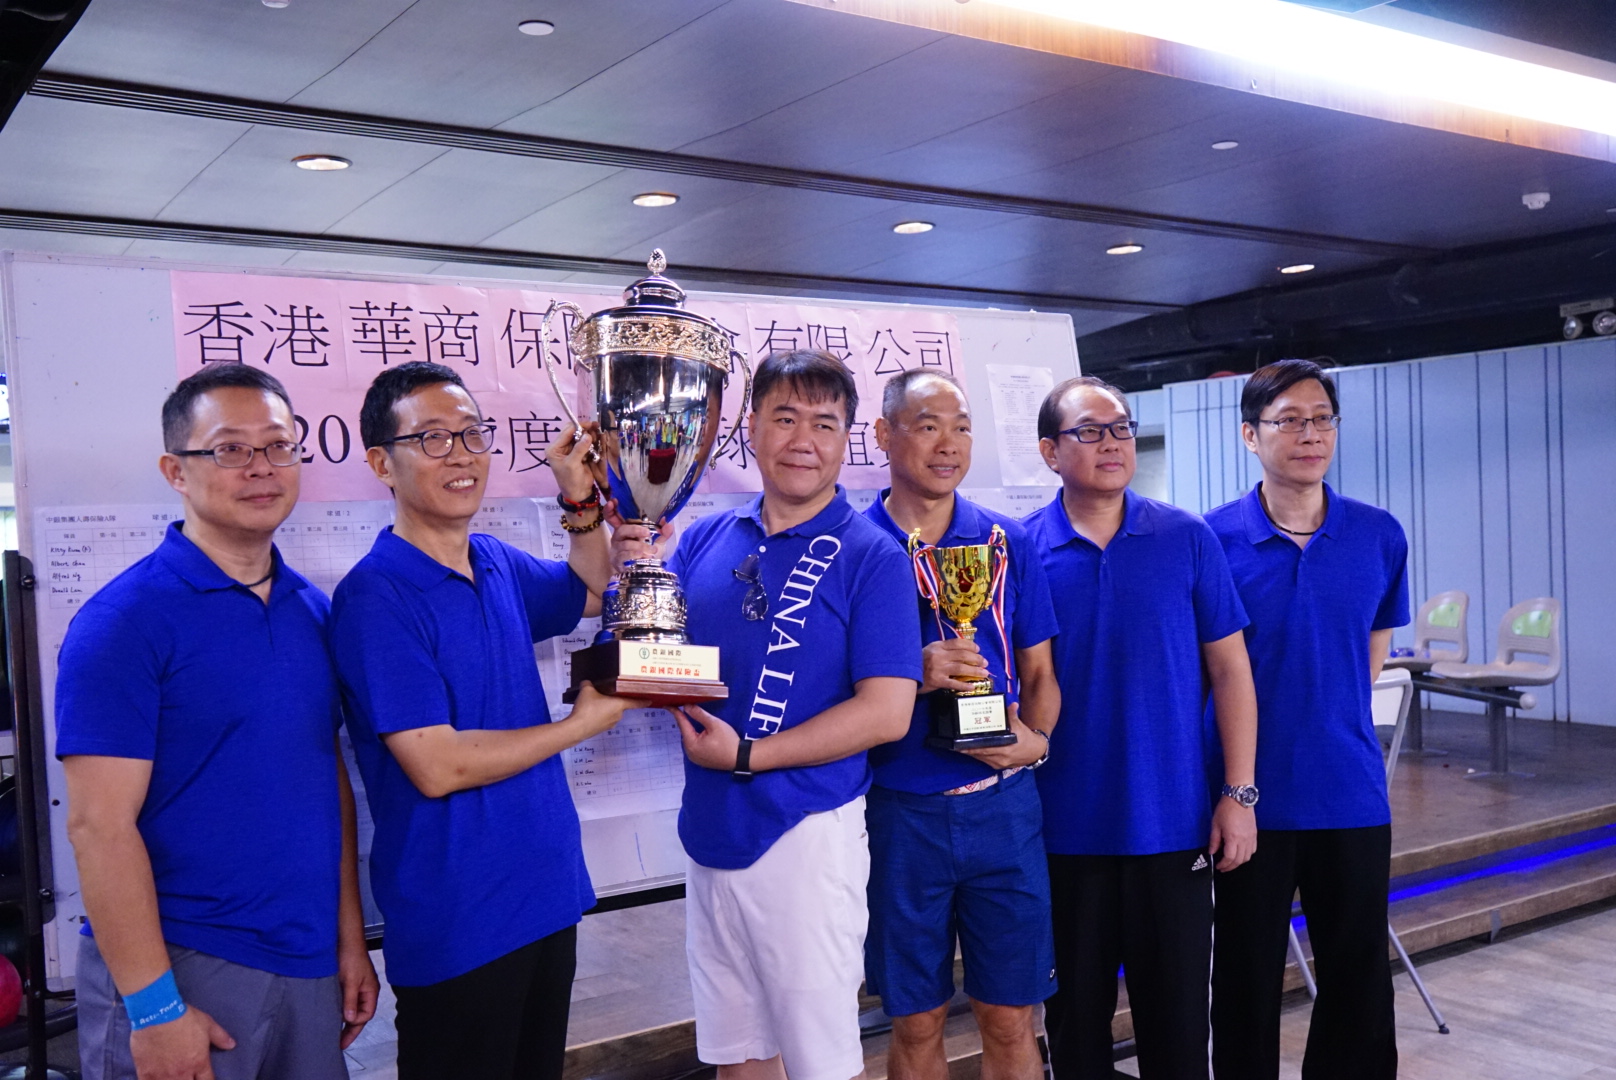 中國人壽（海外）參賽隊伍於「2017年度保齡球友誼比賽」奪得全場季軍